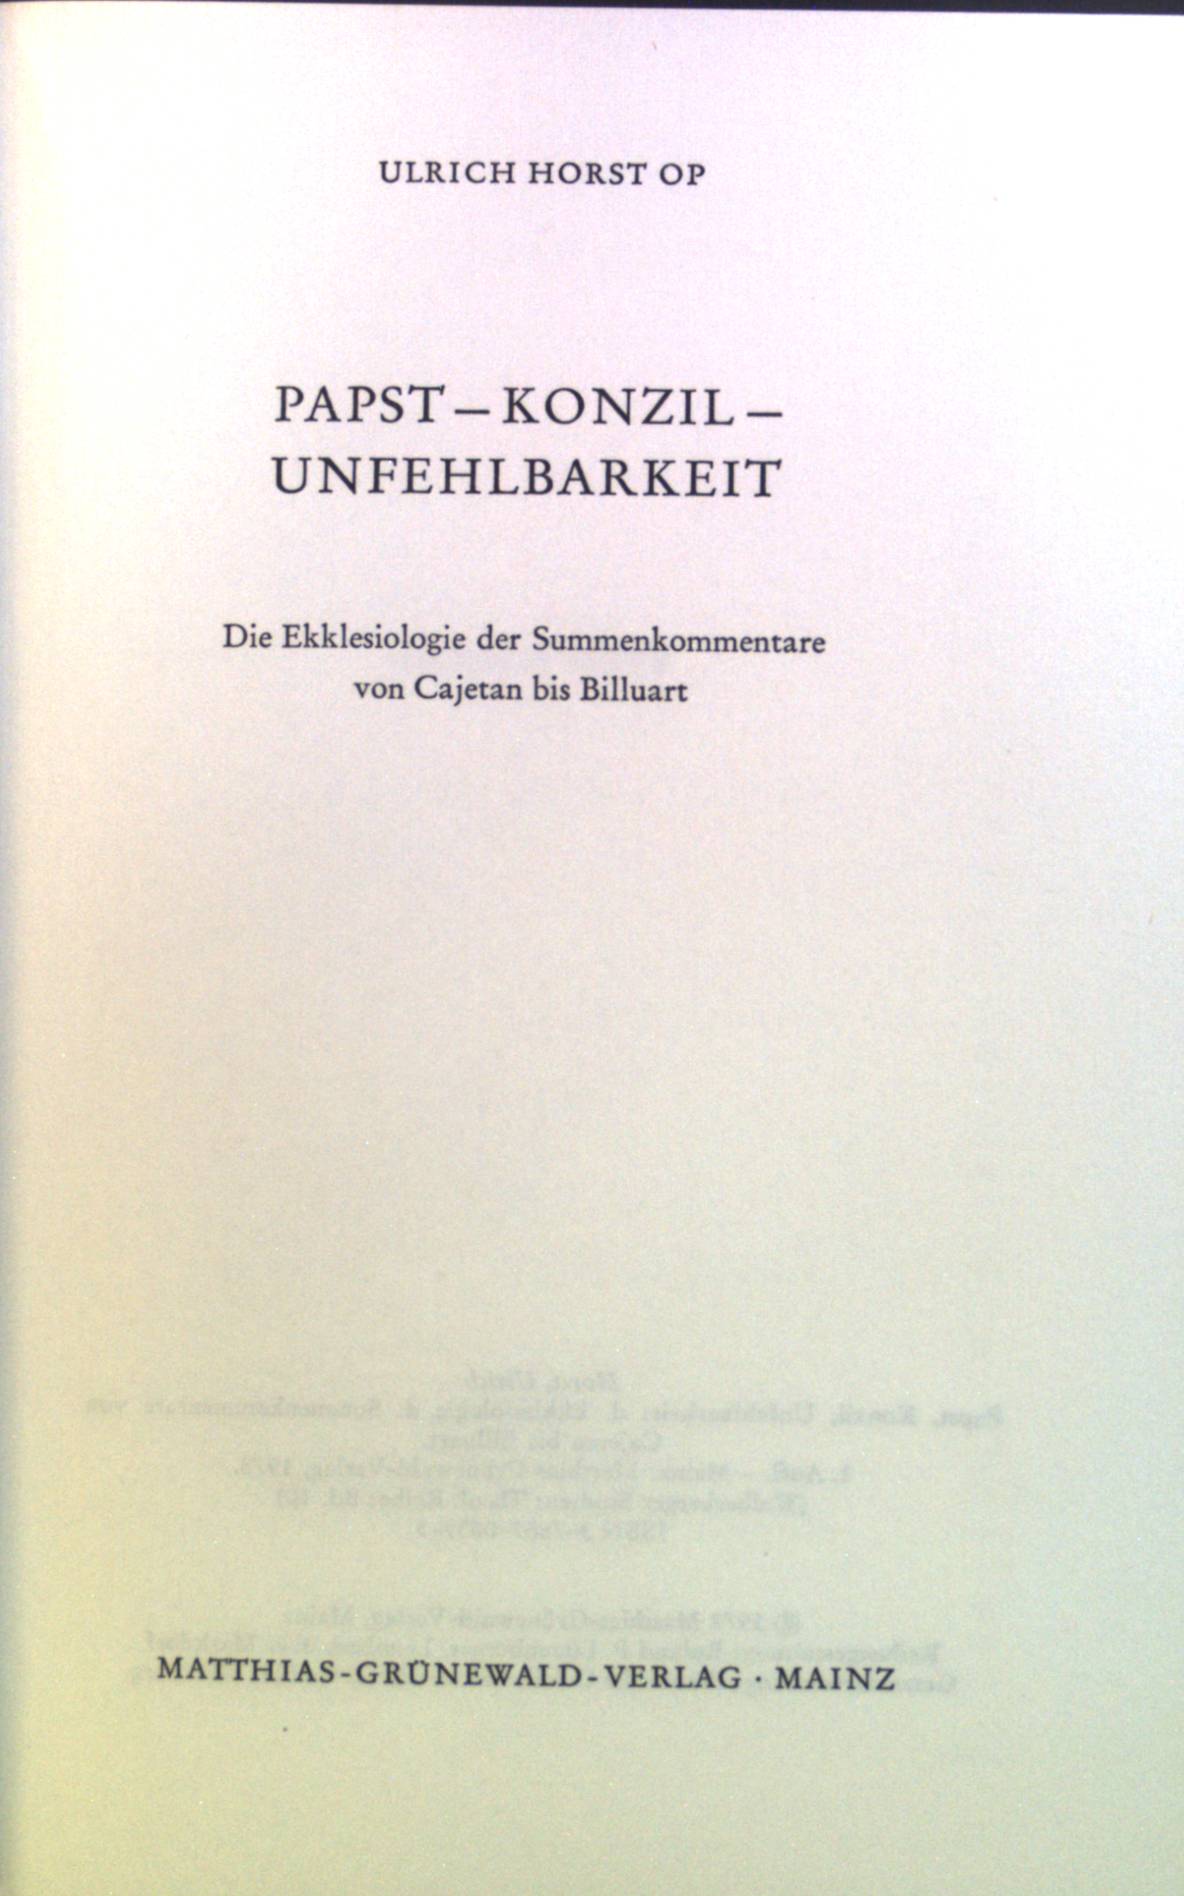 Papst, Konzil, Unfehlbarkeit : Die Ekklesiologie der Summenkommentare von Cajetan bis Billuart. Bd. 10. - Horst, Ulrich